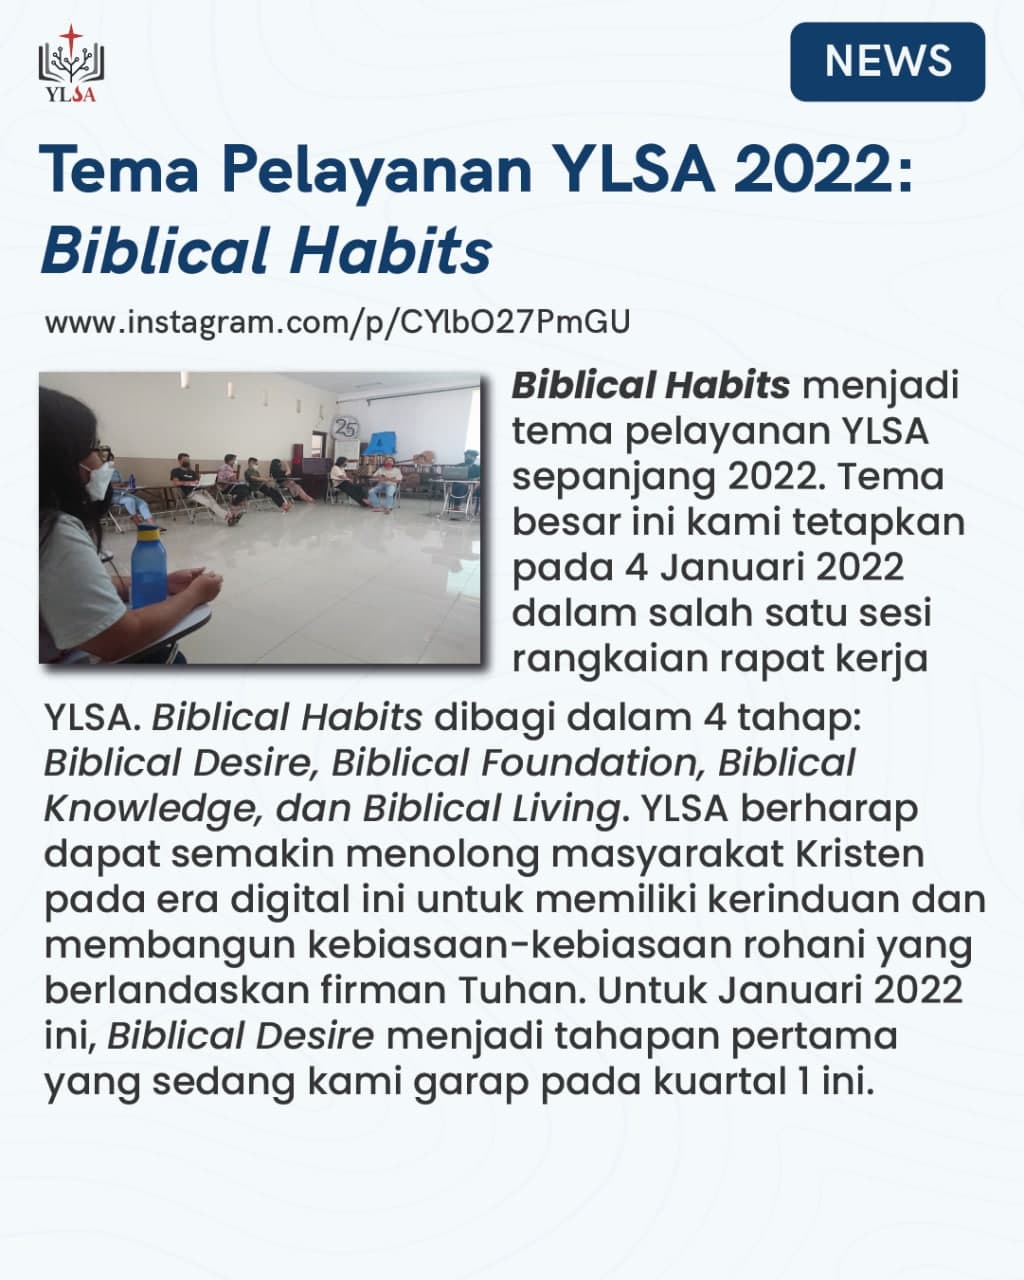 "Biblical Habits" menjadi tema pelayanan YLSA sepanjang 2022.